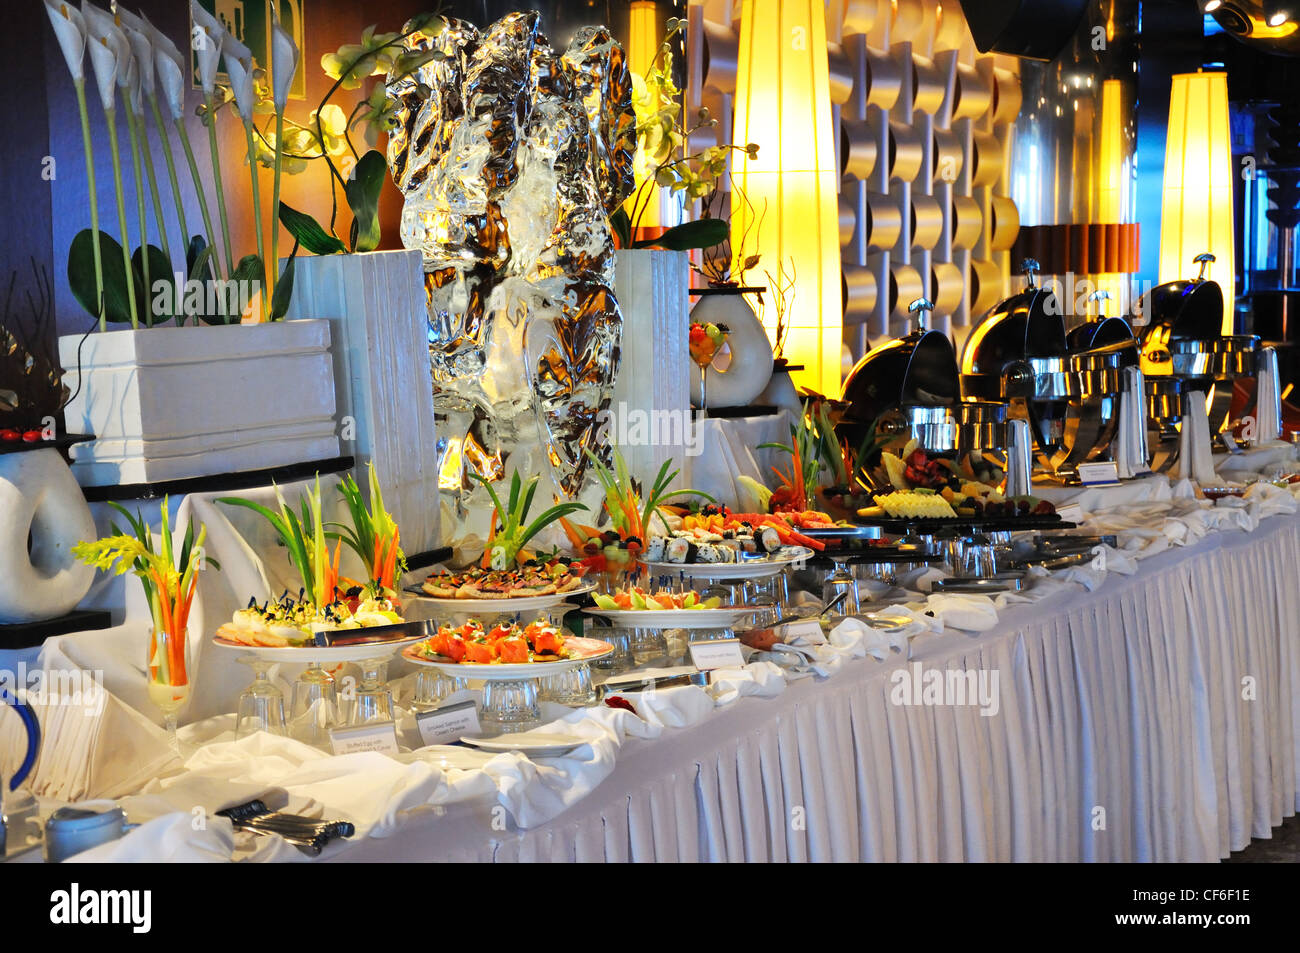 Cruise ship banquet table Stock Photo